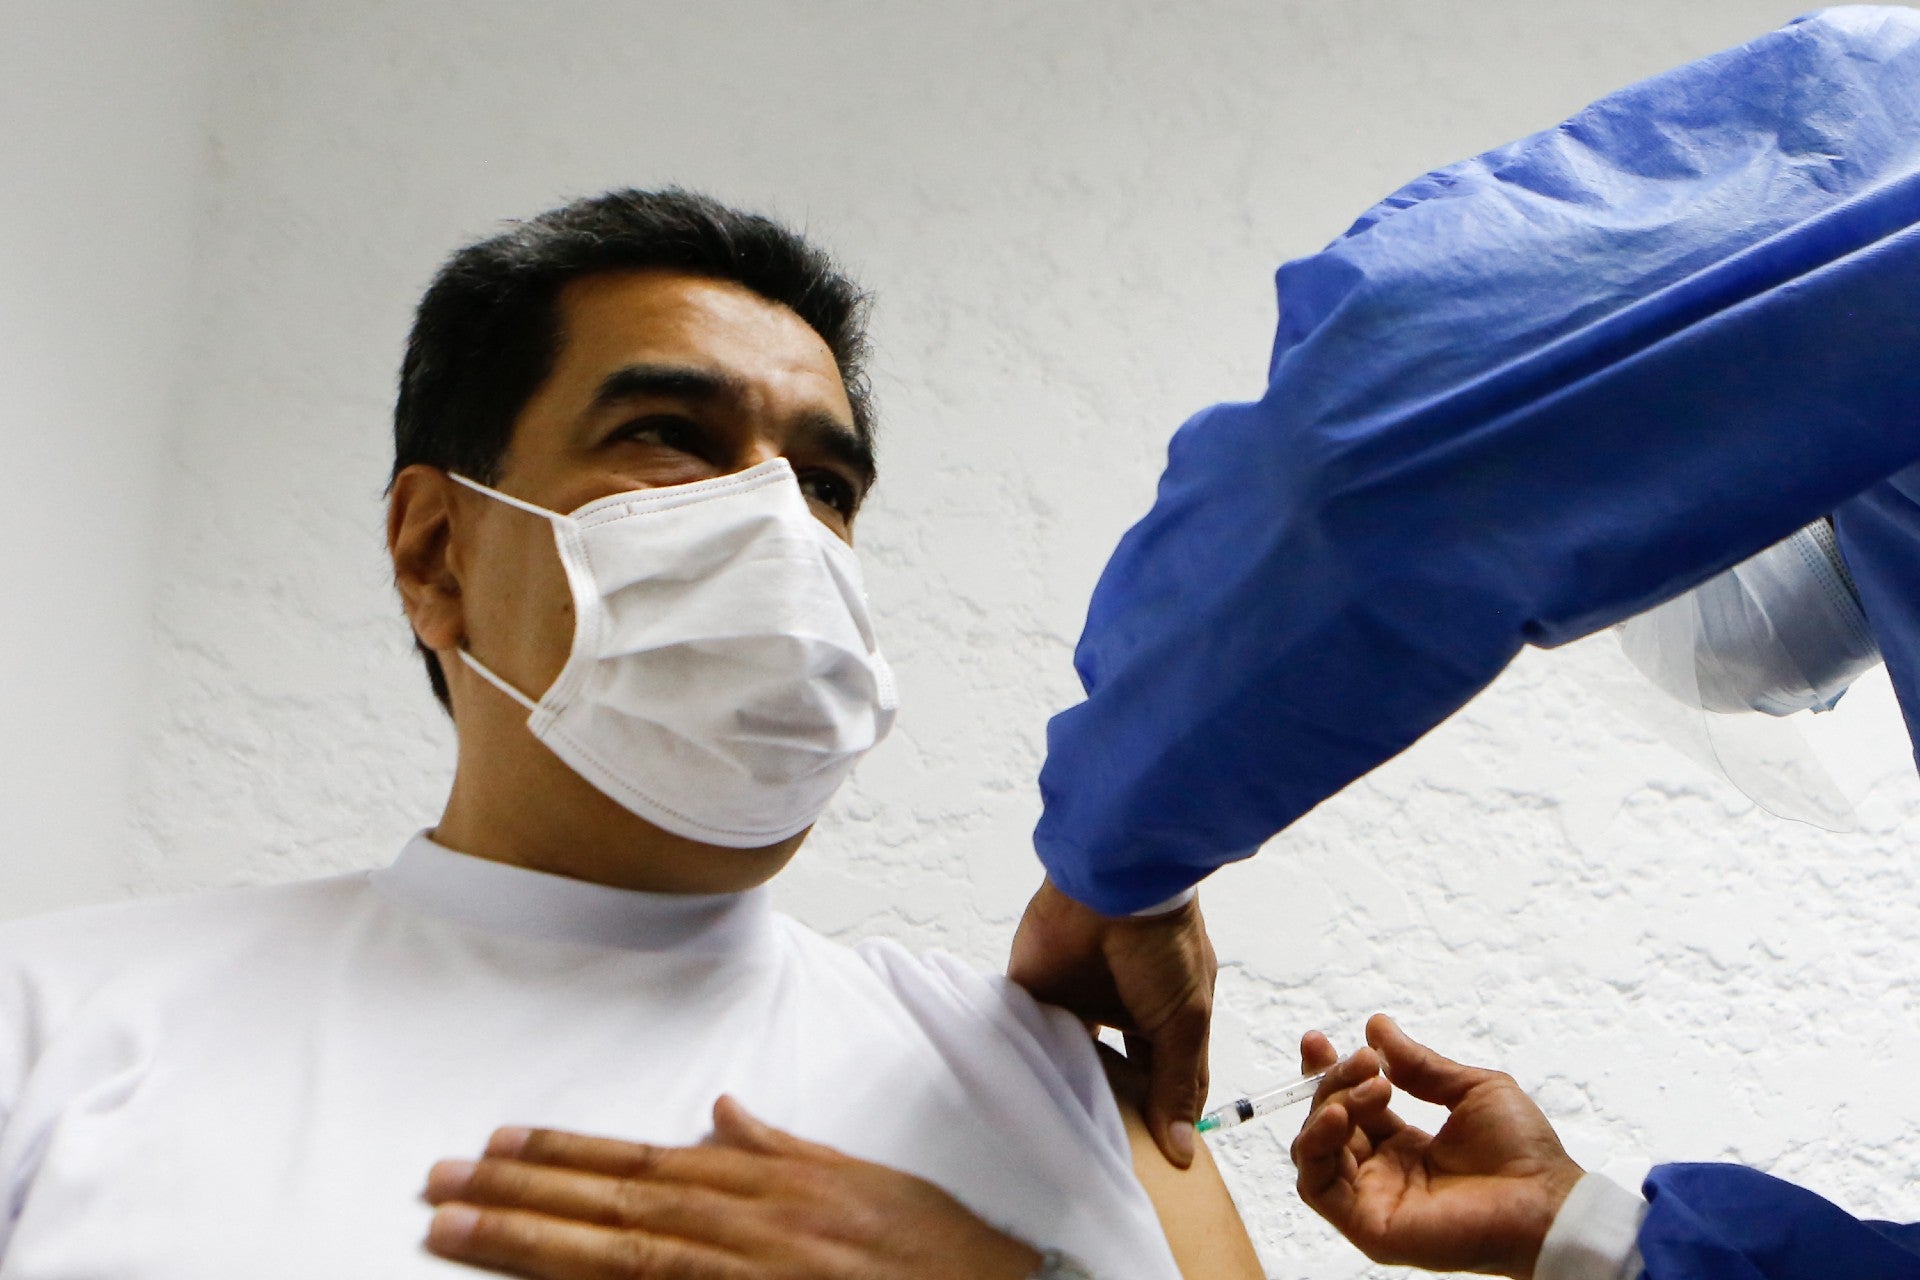 El pasado 6 de marzo, el líder de Venezuela se vacunó contra el COVID-19. La primera dosis recibida fue la de la Sputnik V.